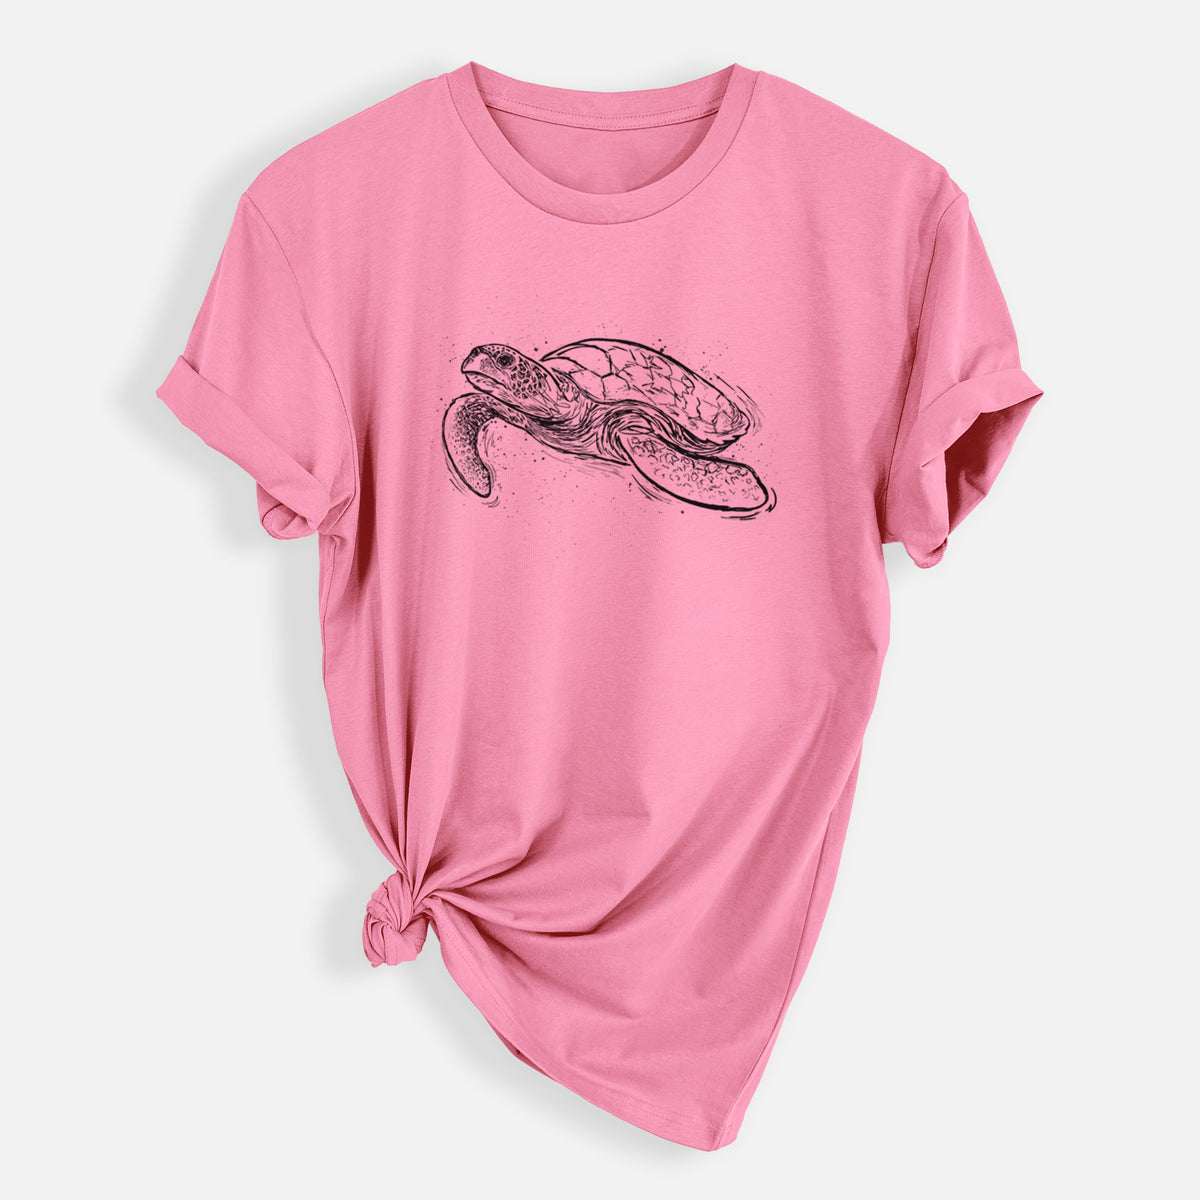 Hawksbill Sea Turtle - Eretmochelys imbricata - Mens Everyday Staple Tee